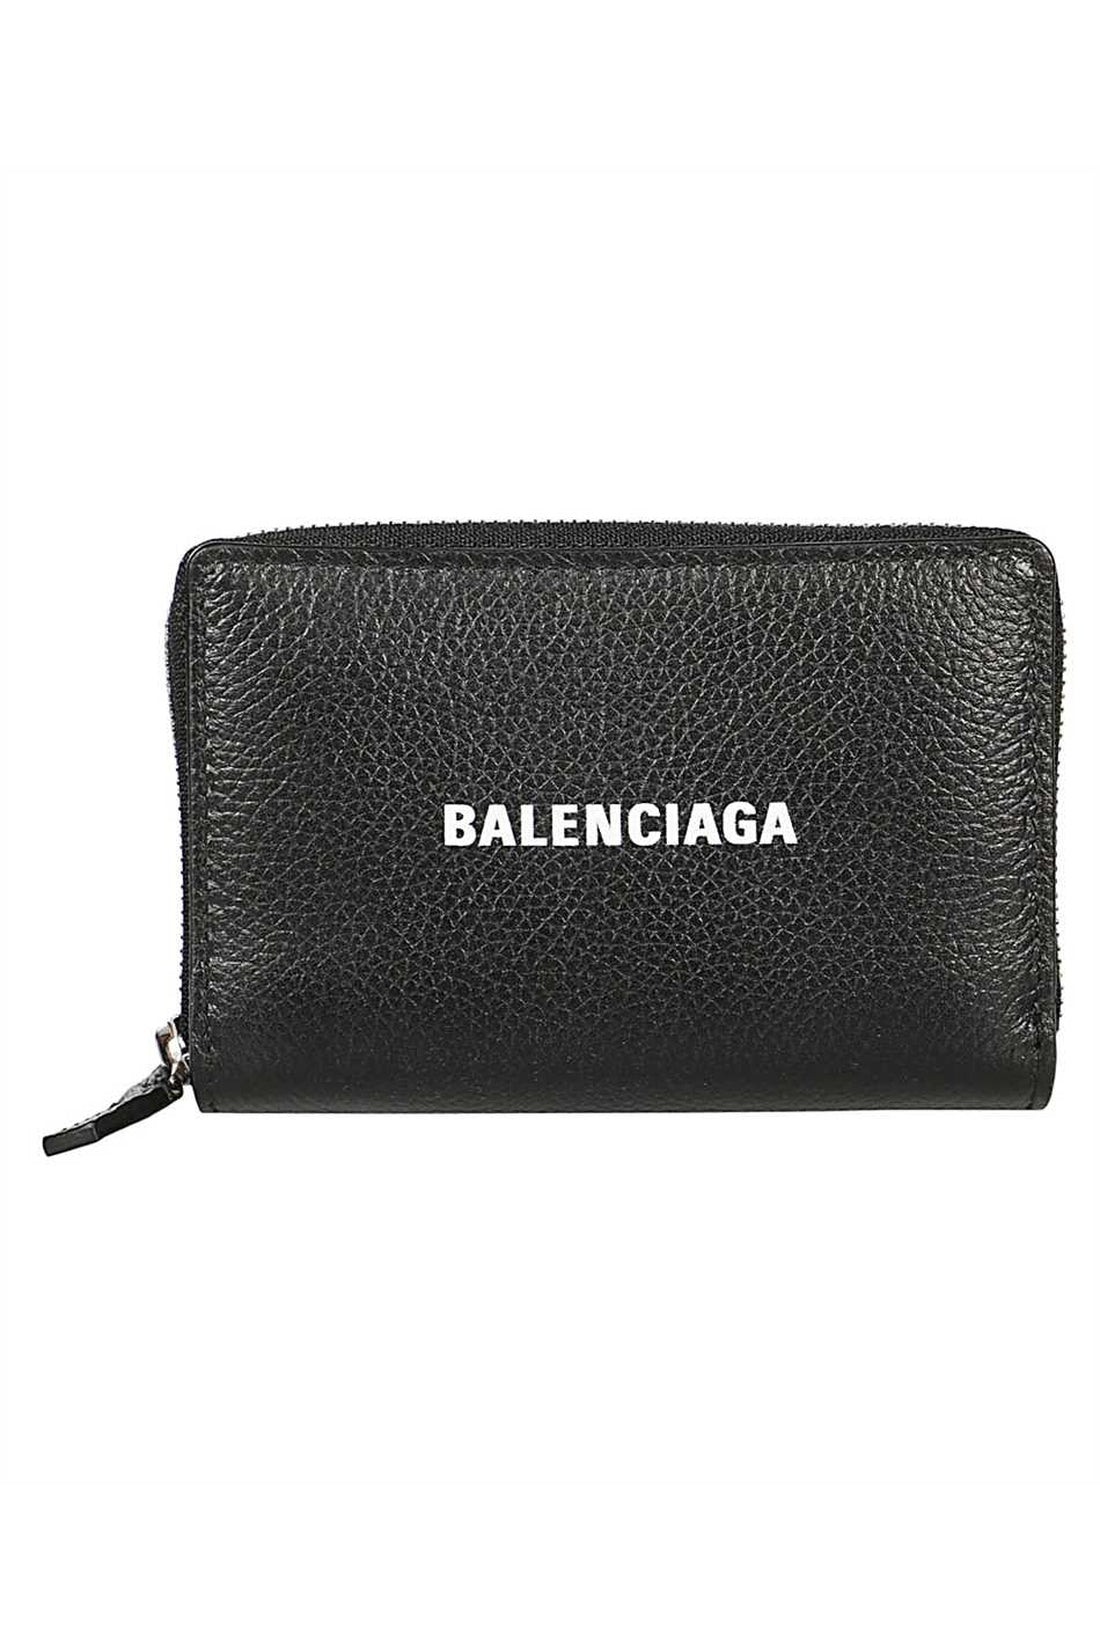 BALENCIAGA-OUTLET-SALE-CARD CASE-ARCHIVIST